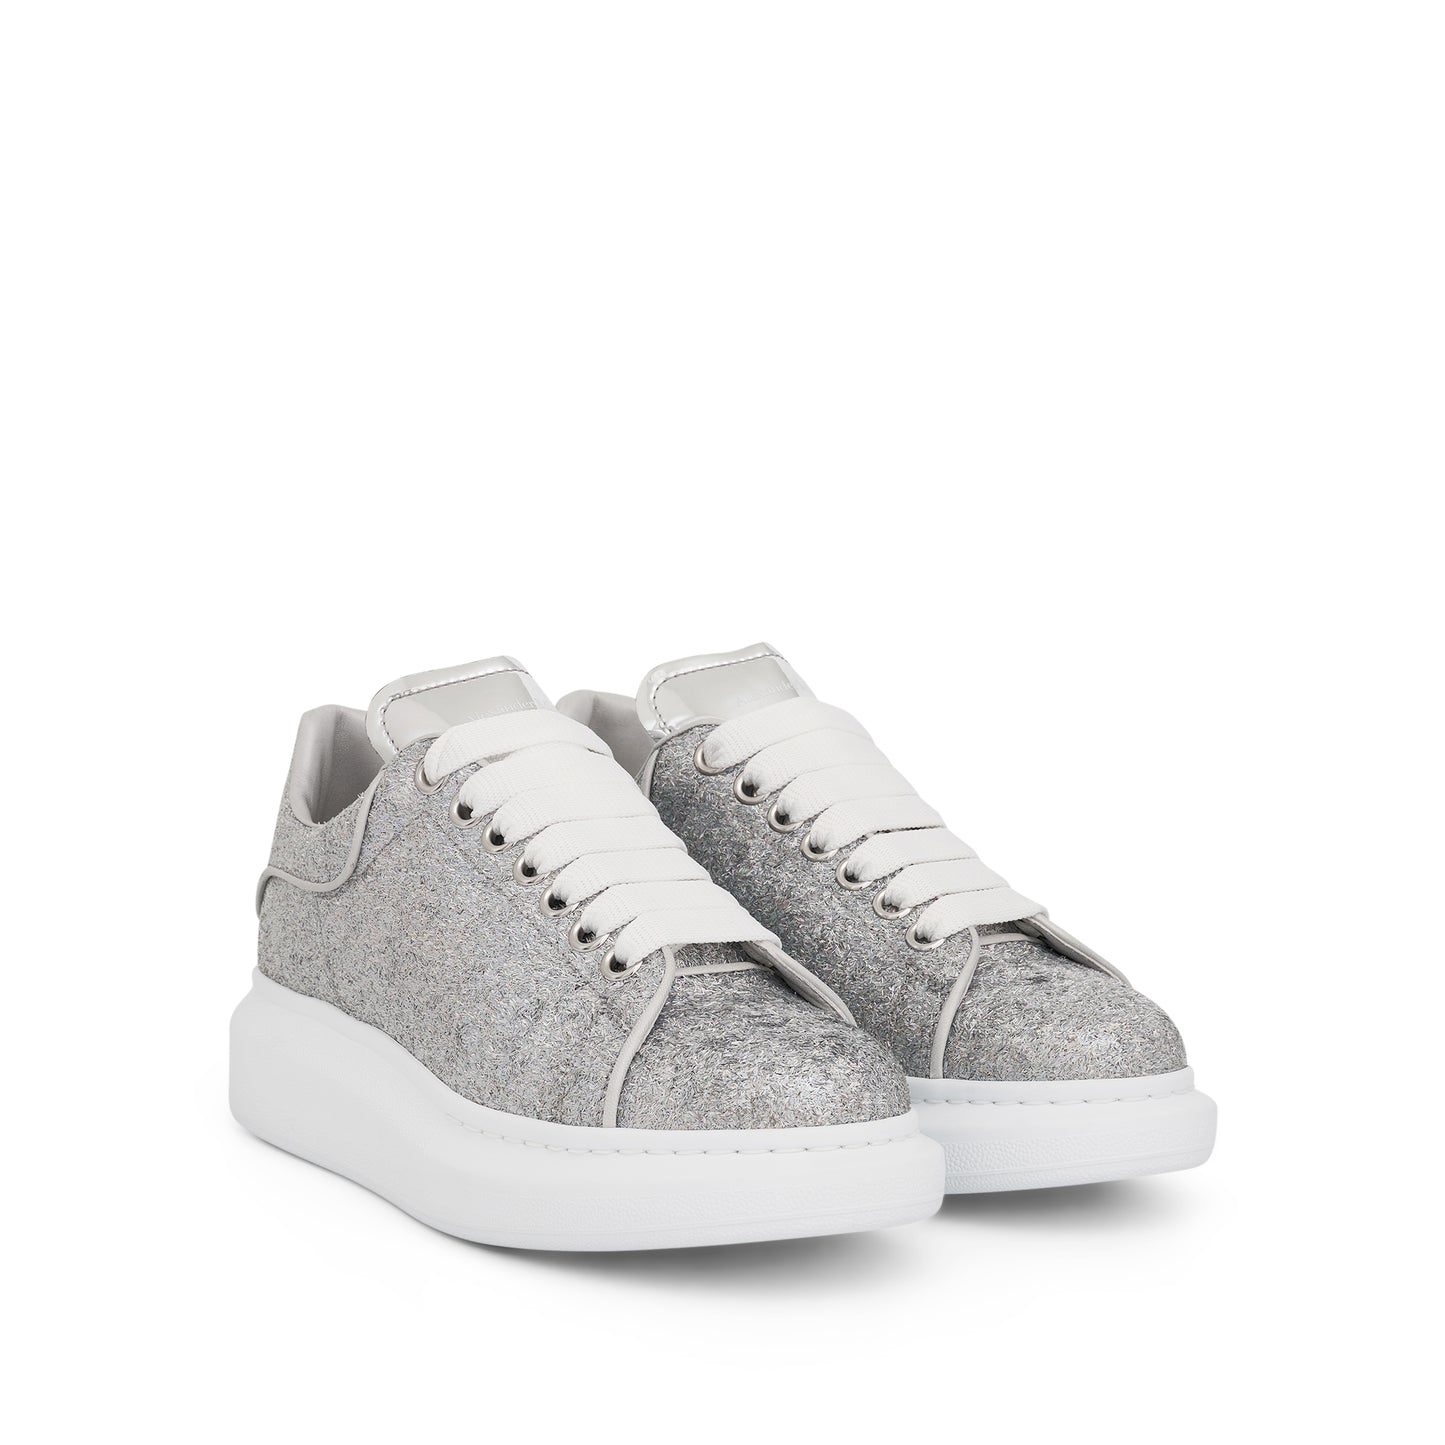 Larry Oversized Glitter Sneaker in Silver/Grey